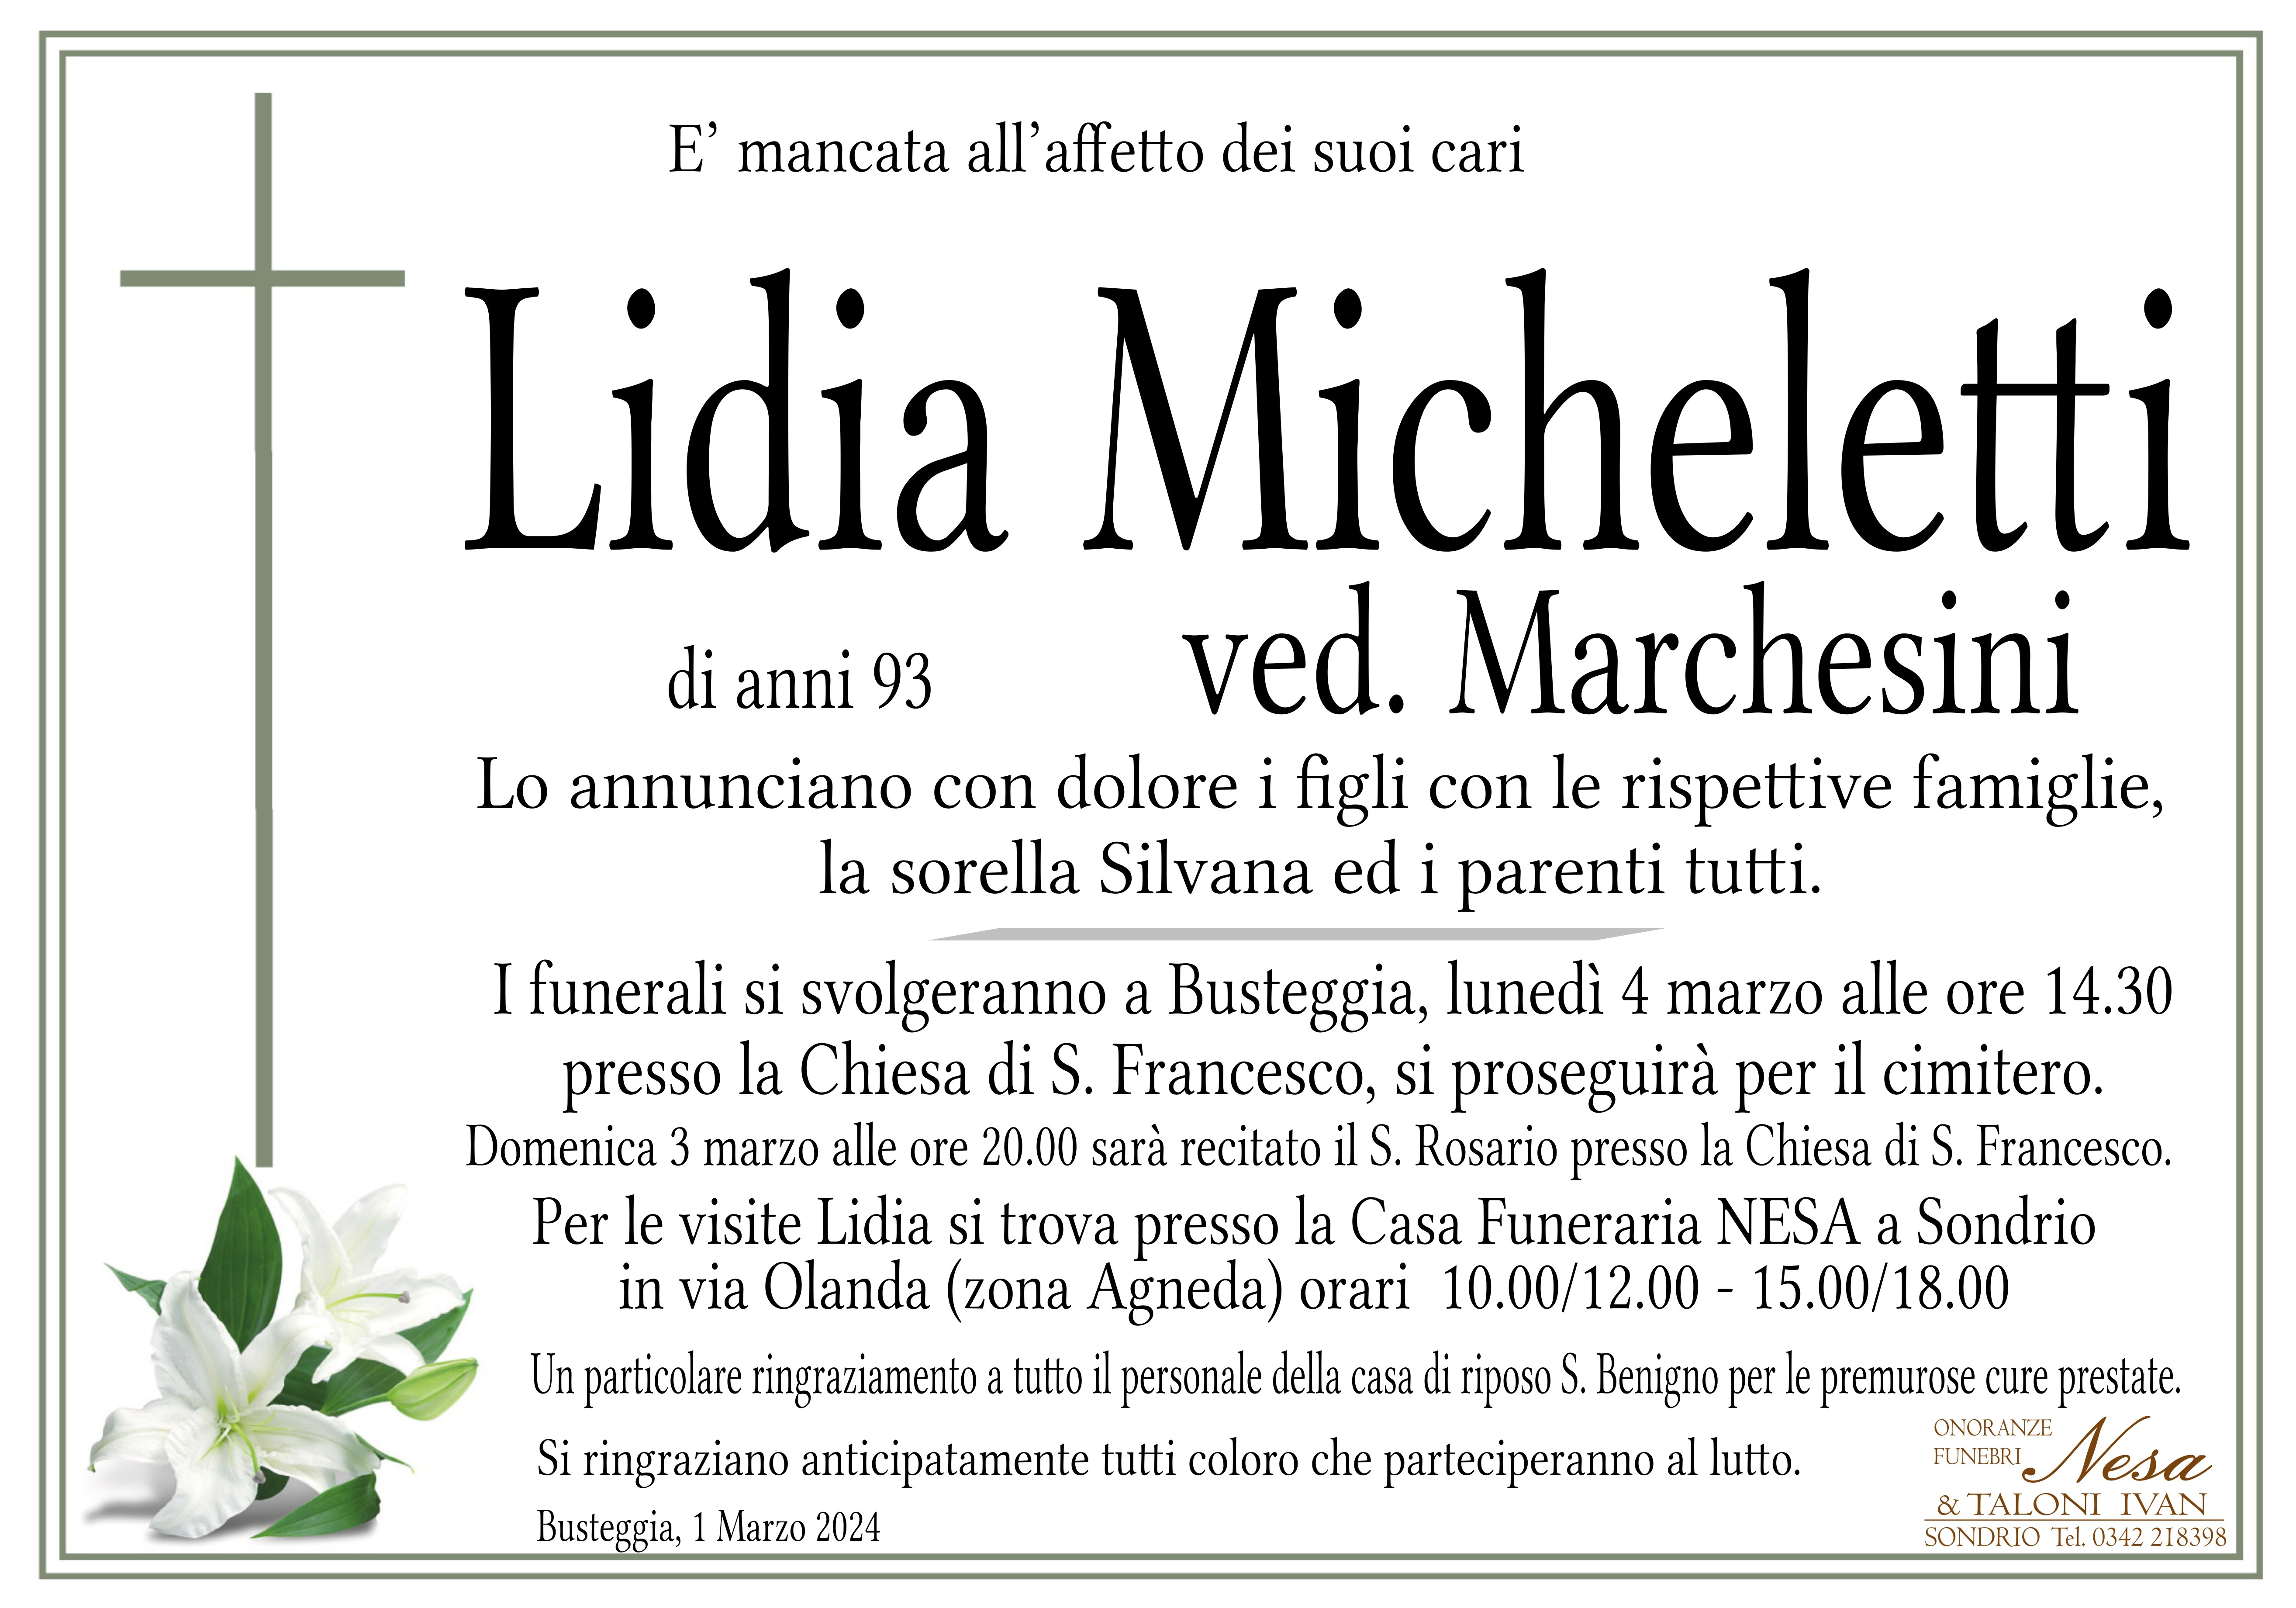 Necrologio Lidia Micheletti ved. Marchesini